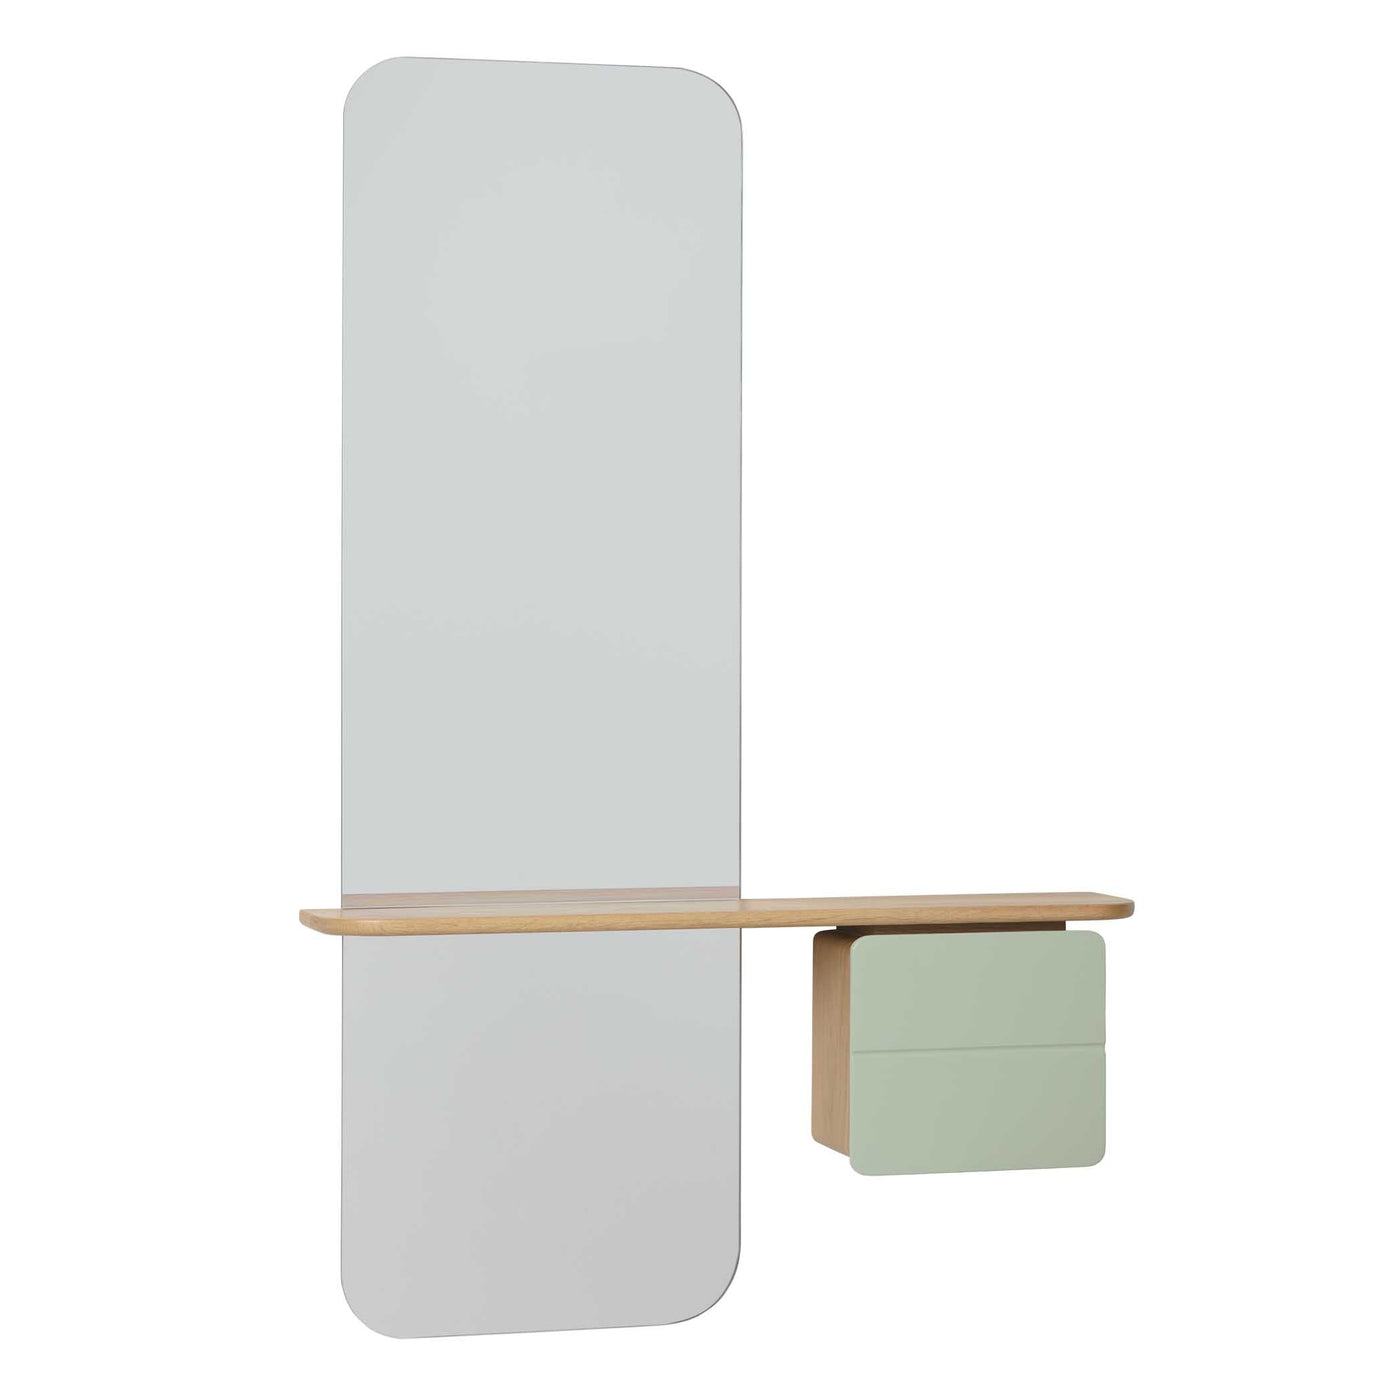 Umage One More Look, miroir avec rangement, en bois et verre, olive, chêne